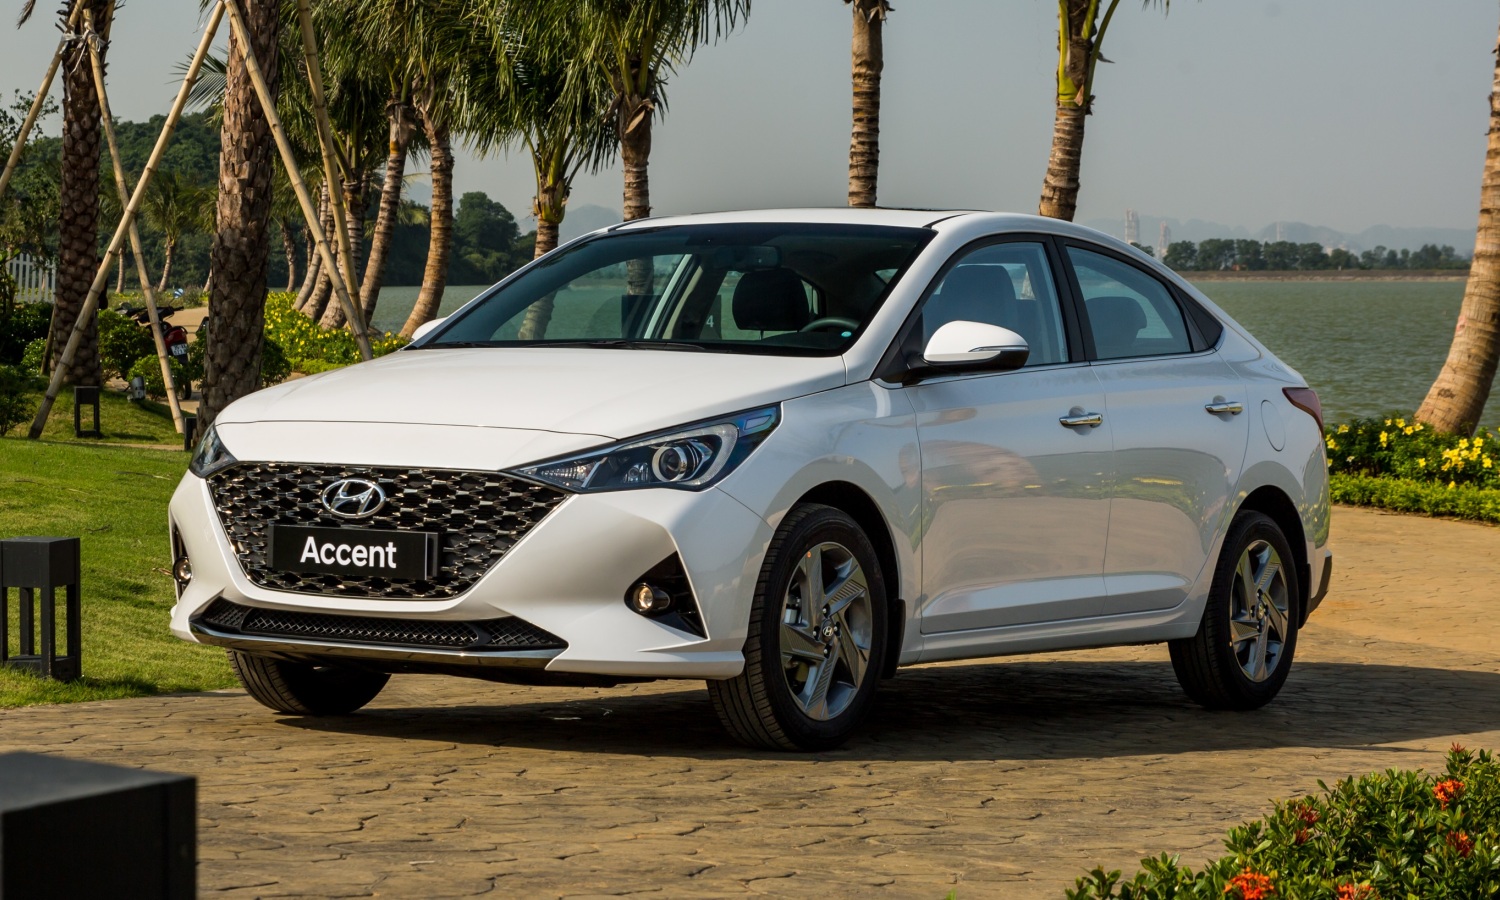 Hyundai Accent tiếp tục dẫn đầu doanh số trong tháng 4